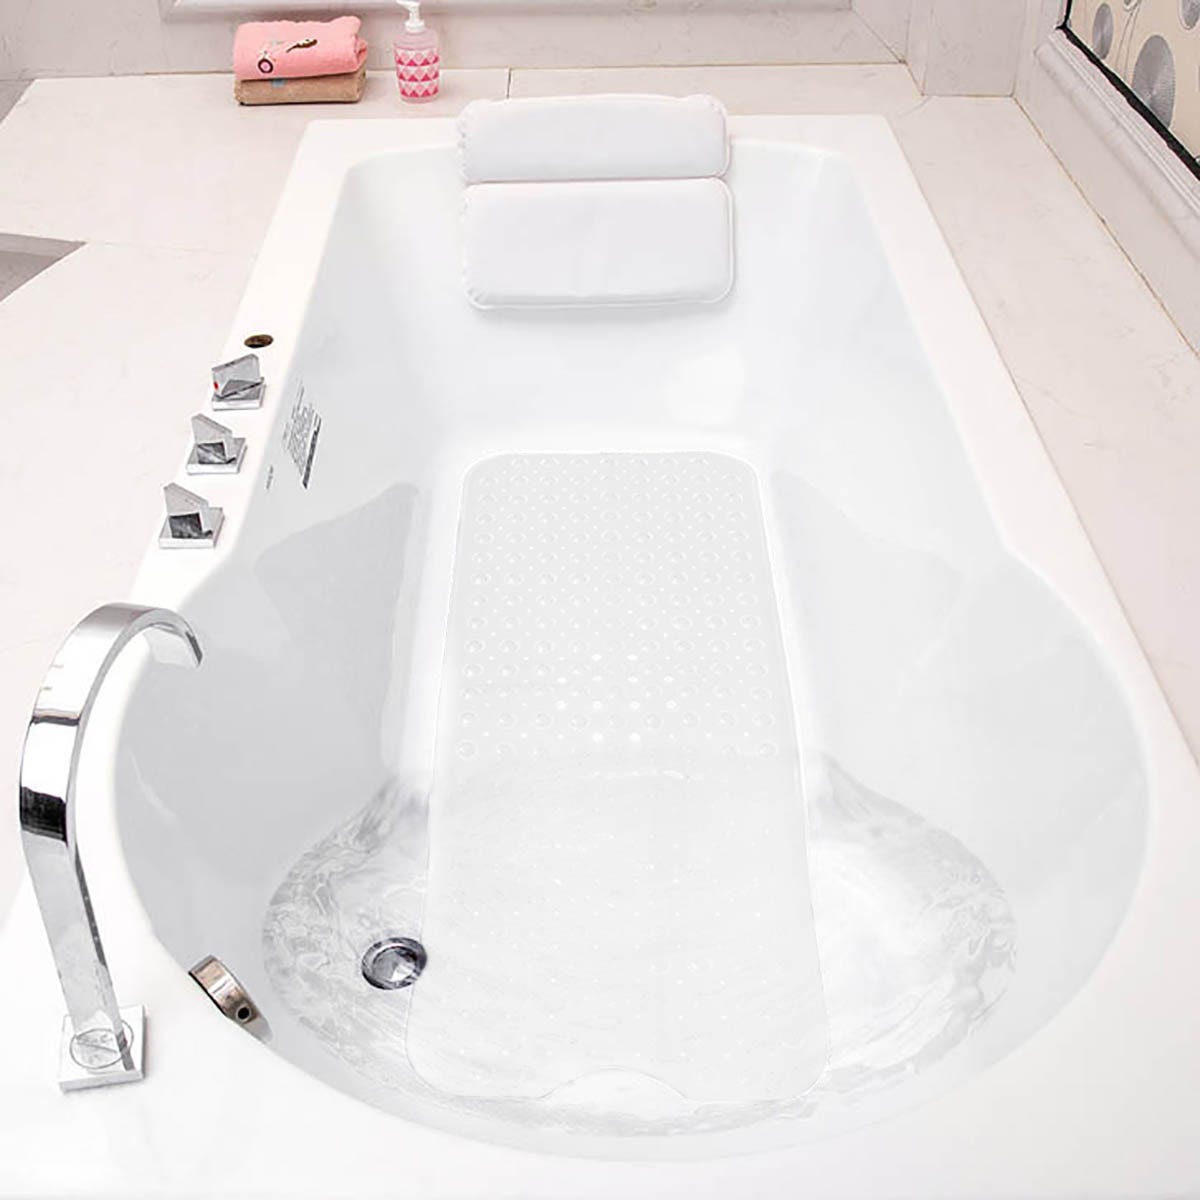 Tappeto in PVC antiscivolo per vasca da bagno 100 x 40 cm Bianco